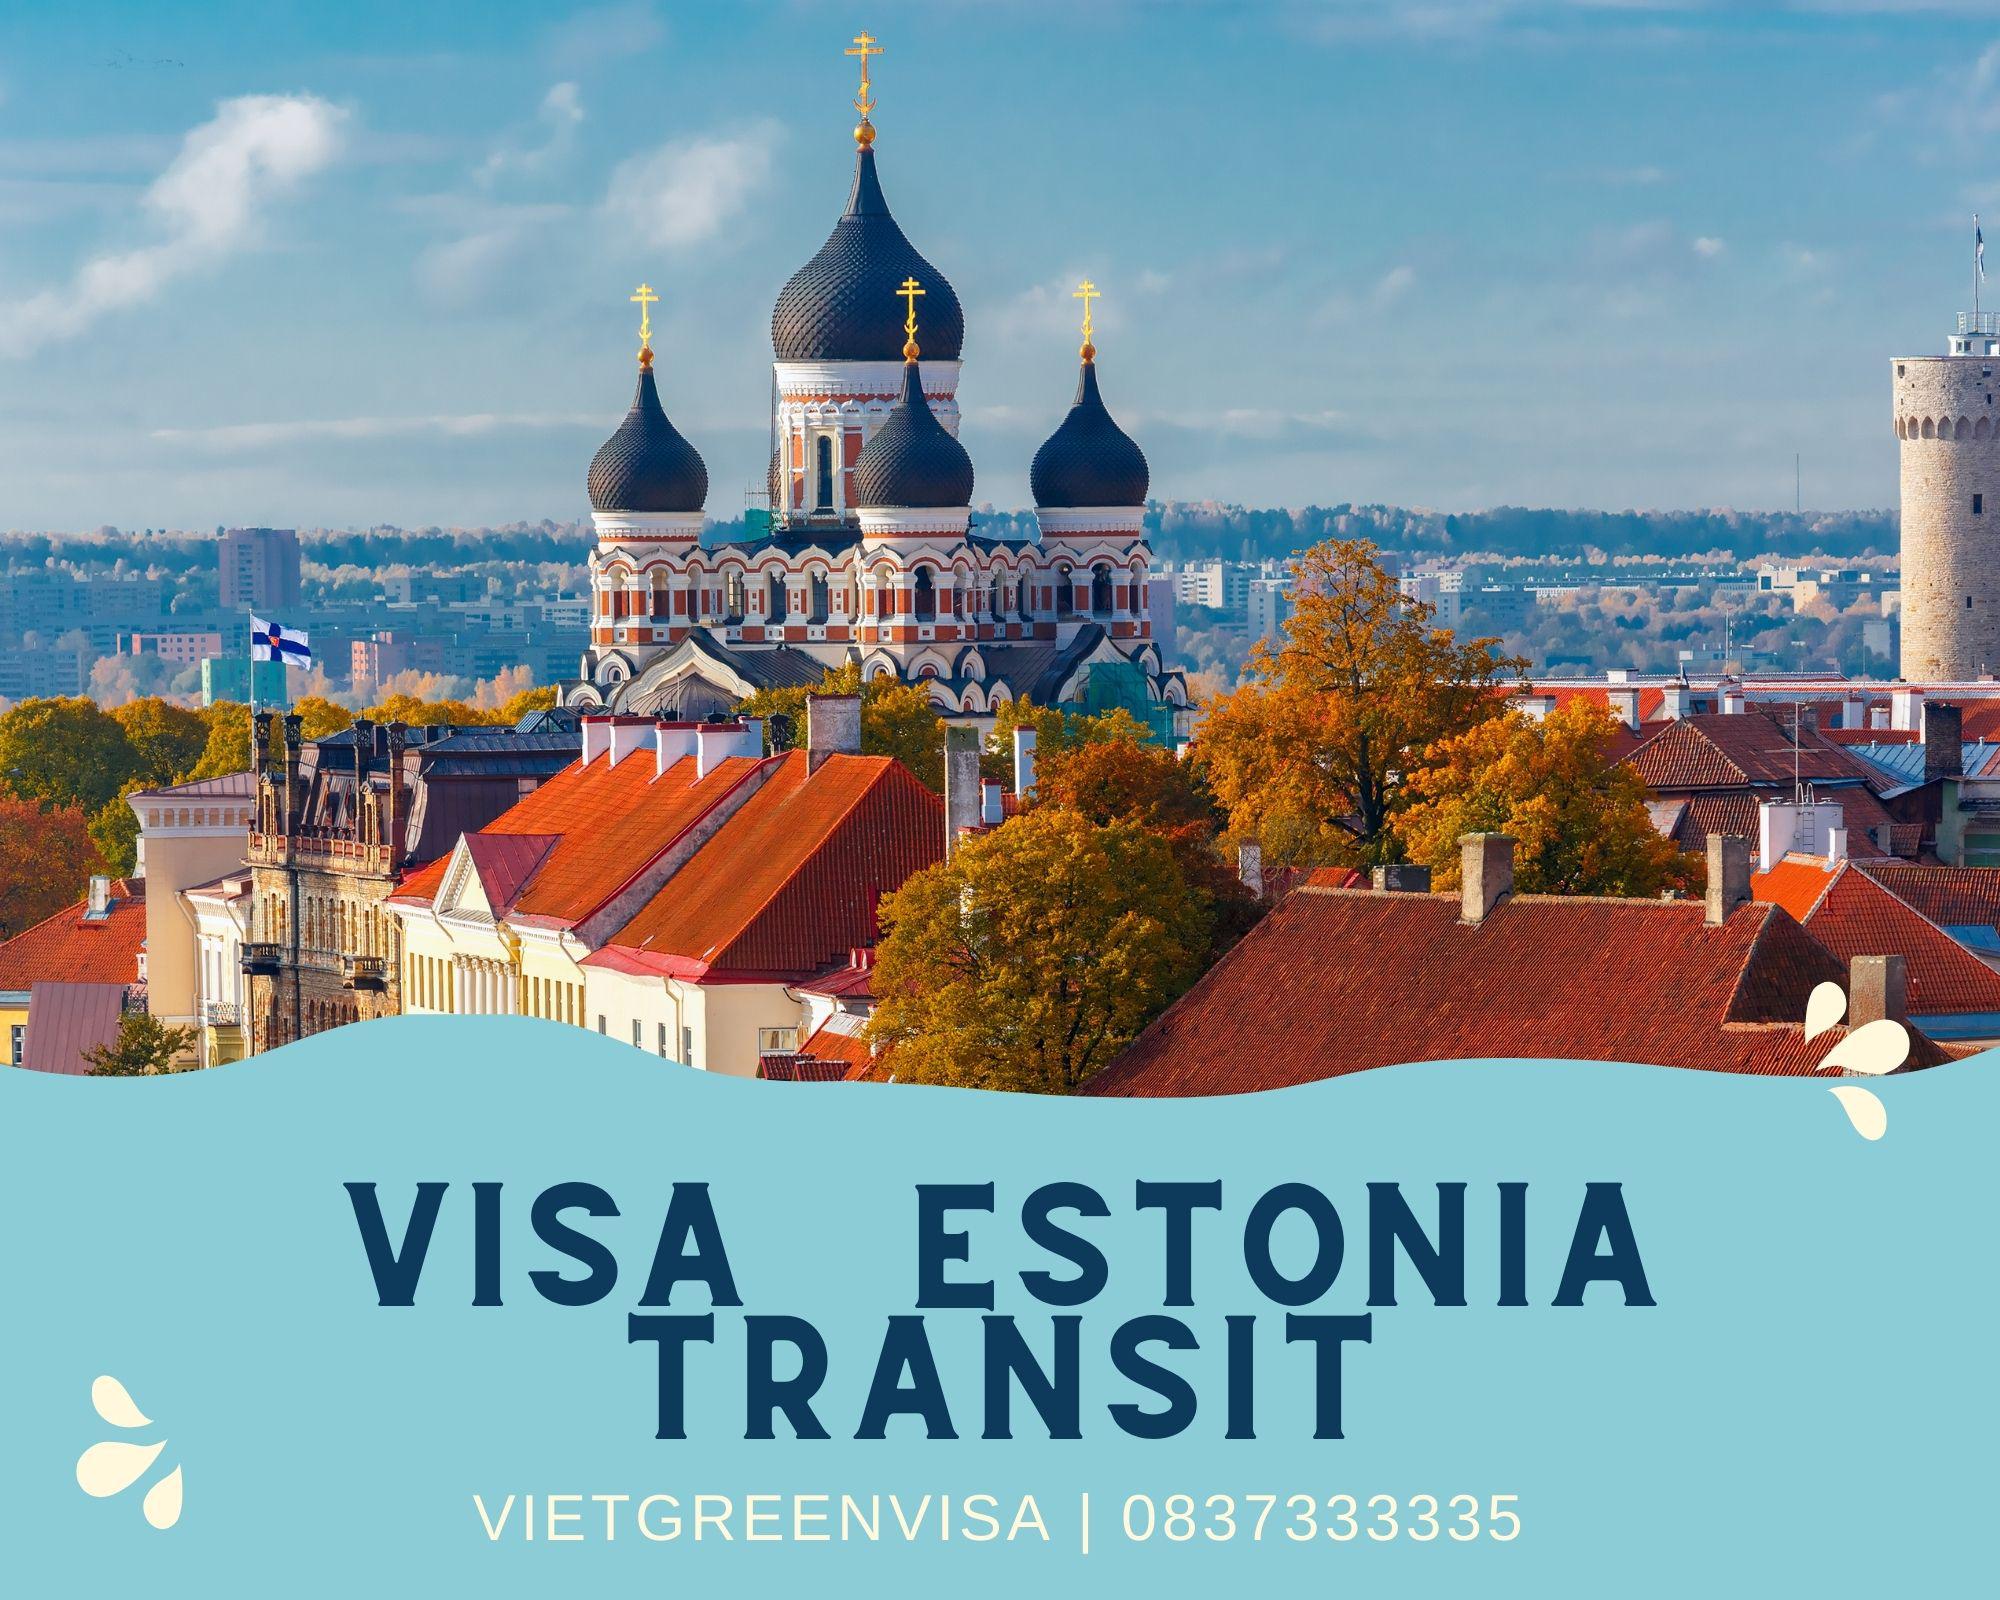 Hỗ trợ, tư vấn visa quá cảnh, transit Estonia trọn gói